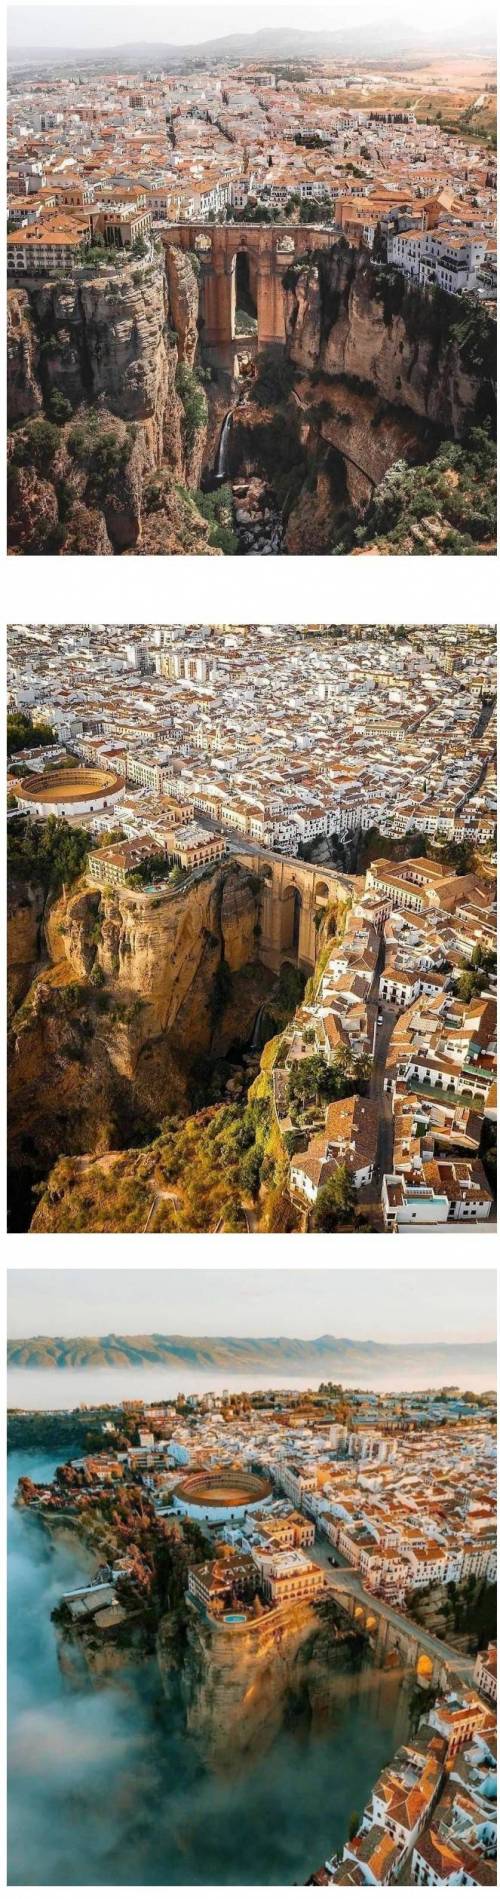 판타지 세계에 나올 듯한 스페인 협곡 도시.jpg